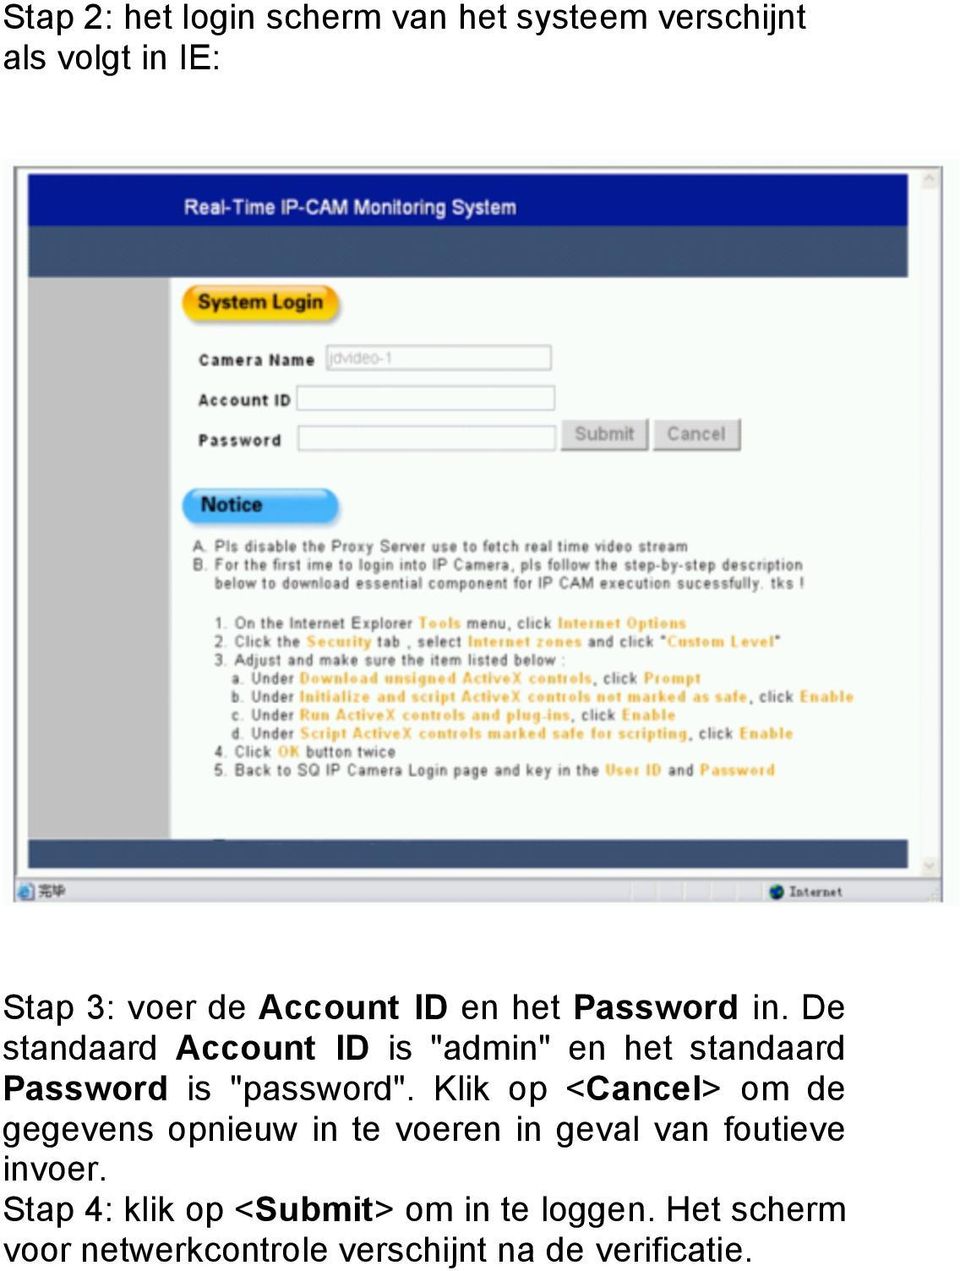 De standaard Account ID is "admin" en het standaard Password is "password".